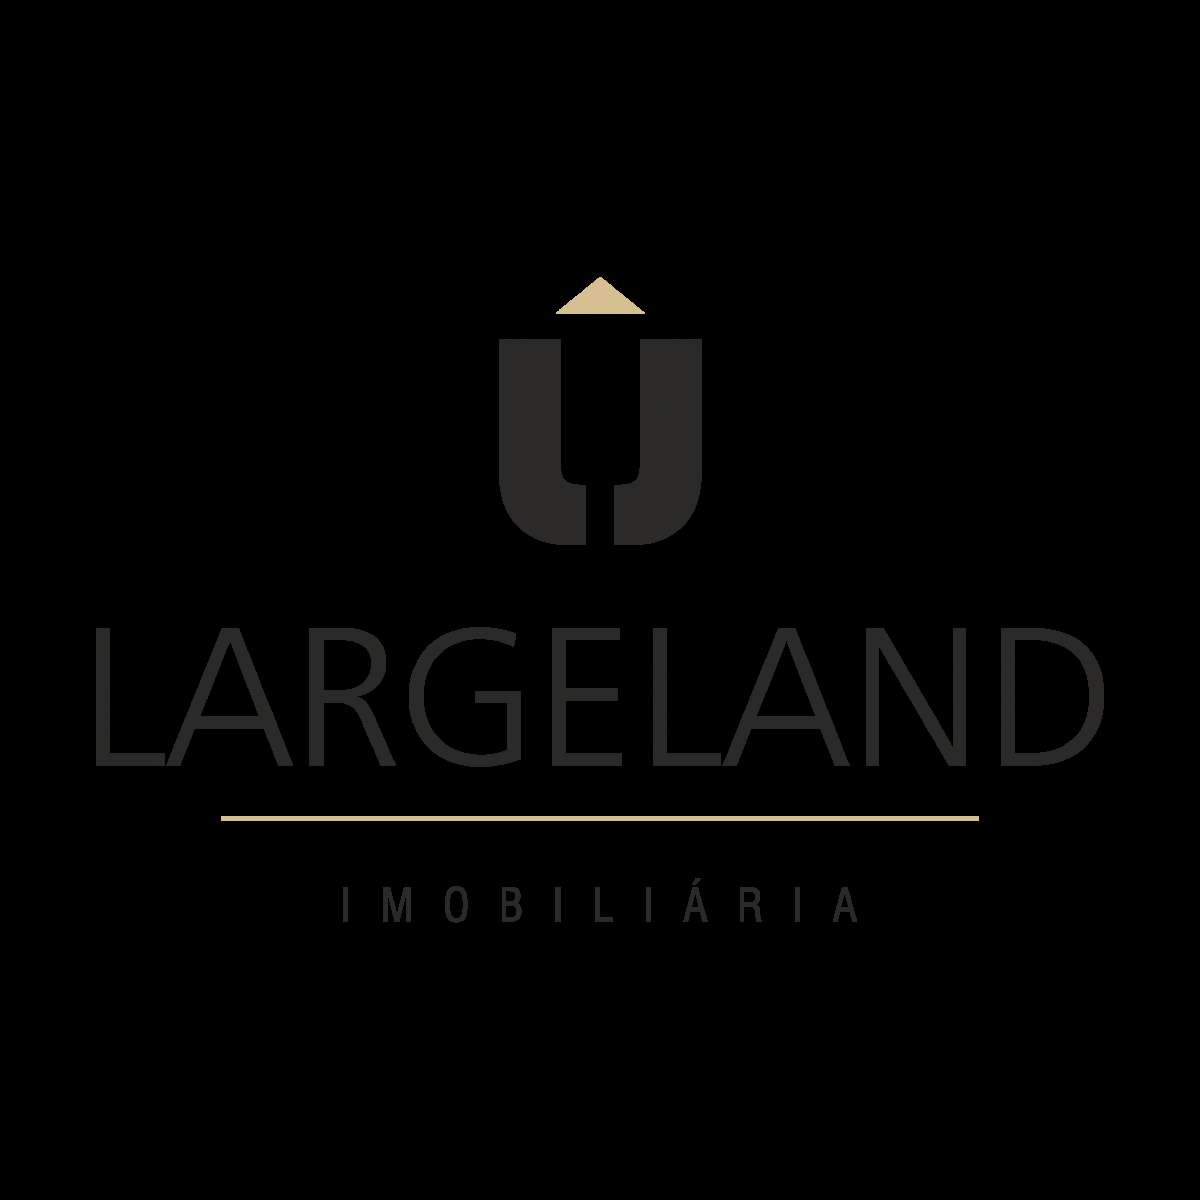 Largeland lda - Santa Maria da Feira - Imobiliário